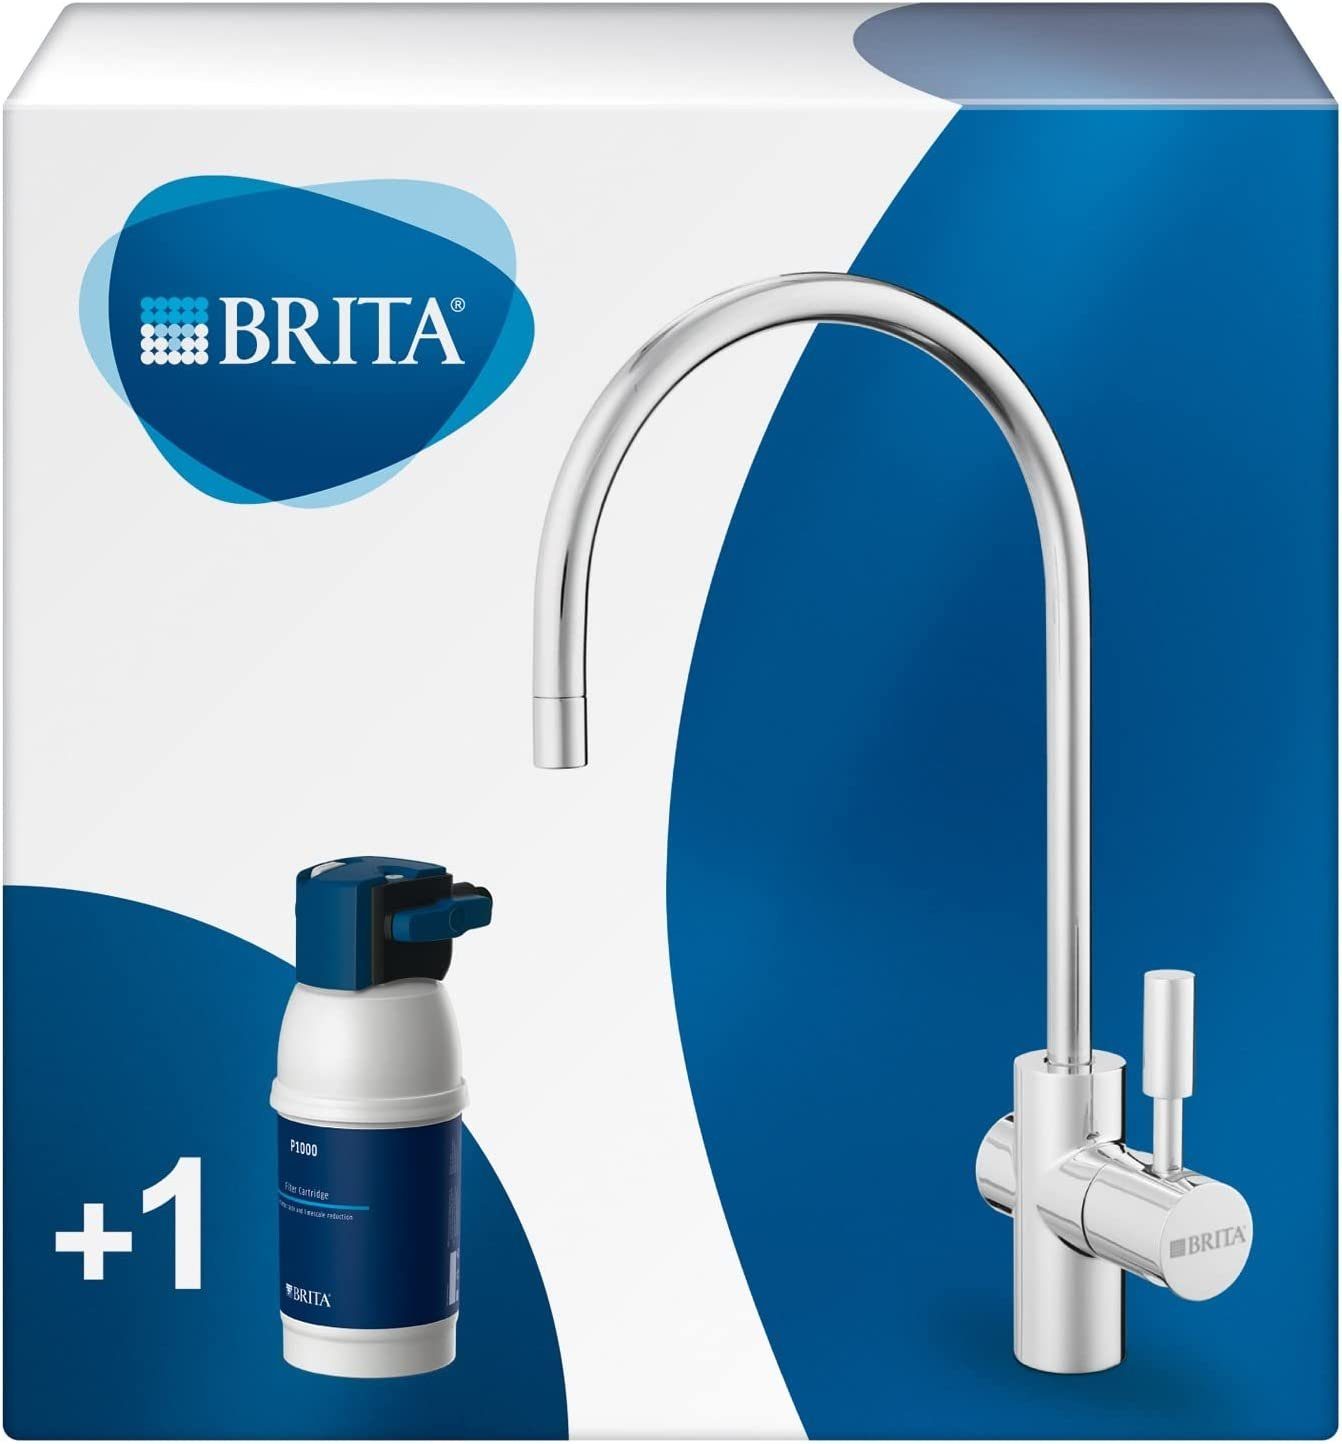 BRITA Küchenarmatur mypure P1 (1 x BRITA Küchenarmatur, 1 x Filterkartusche P1000, 1 x Filterkopf mit) reduziert Kalk, Chlor, Blei & Kupfer im Leitungswasser